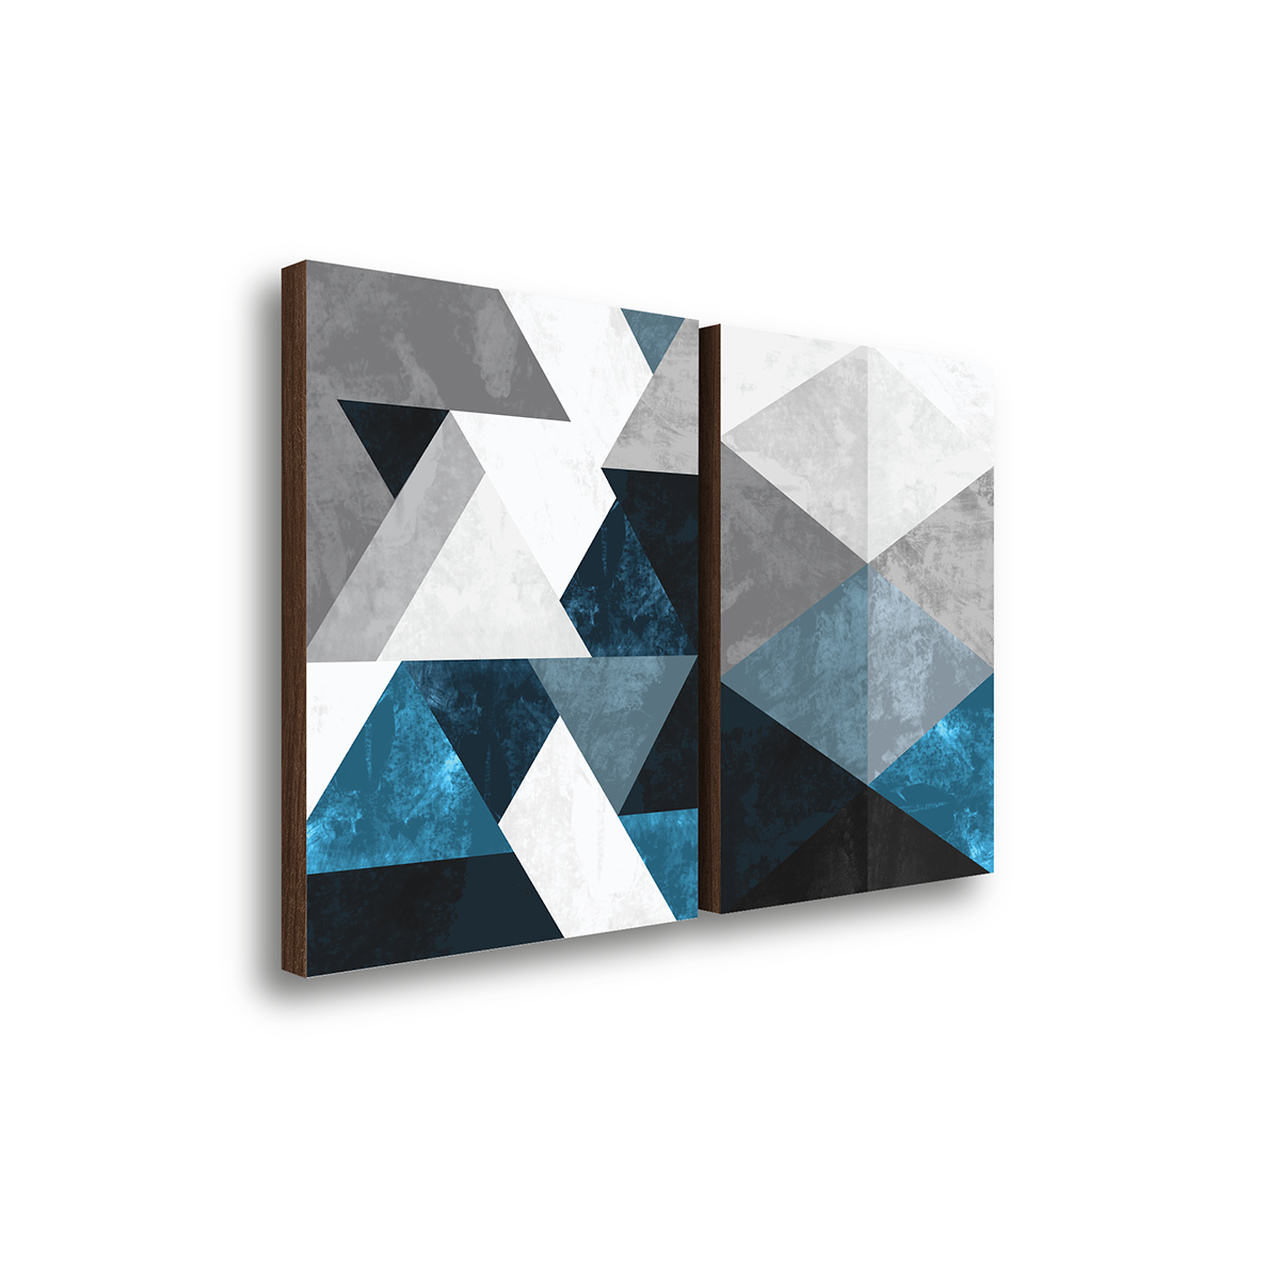 Fotografia de dois quadros com formas geométricas em tons de azul e preto